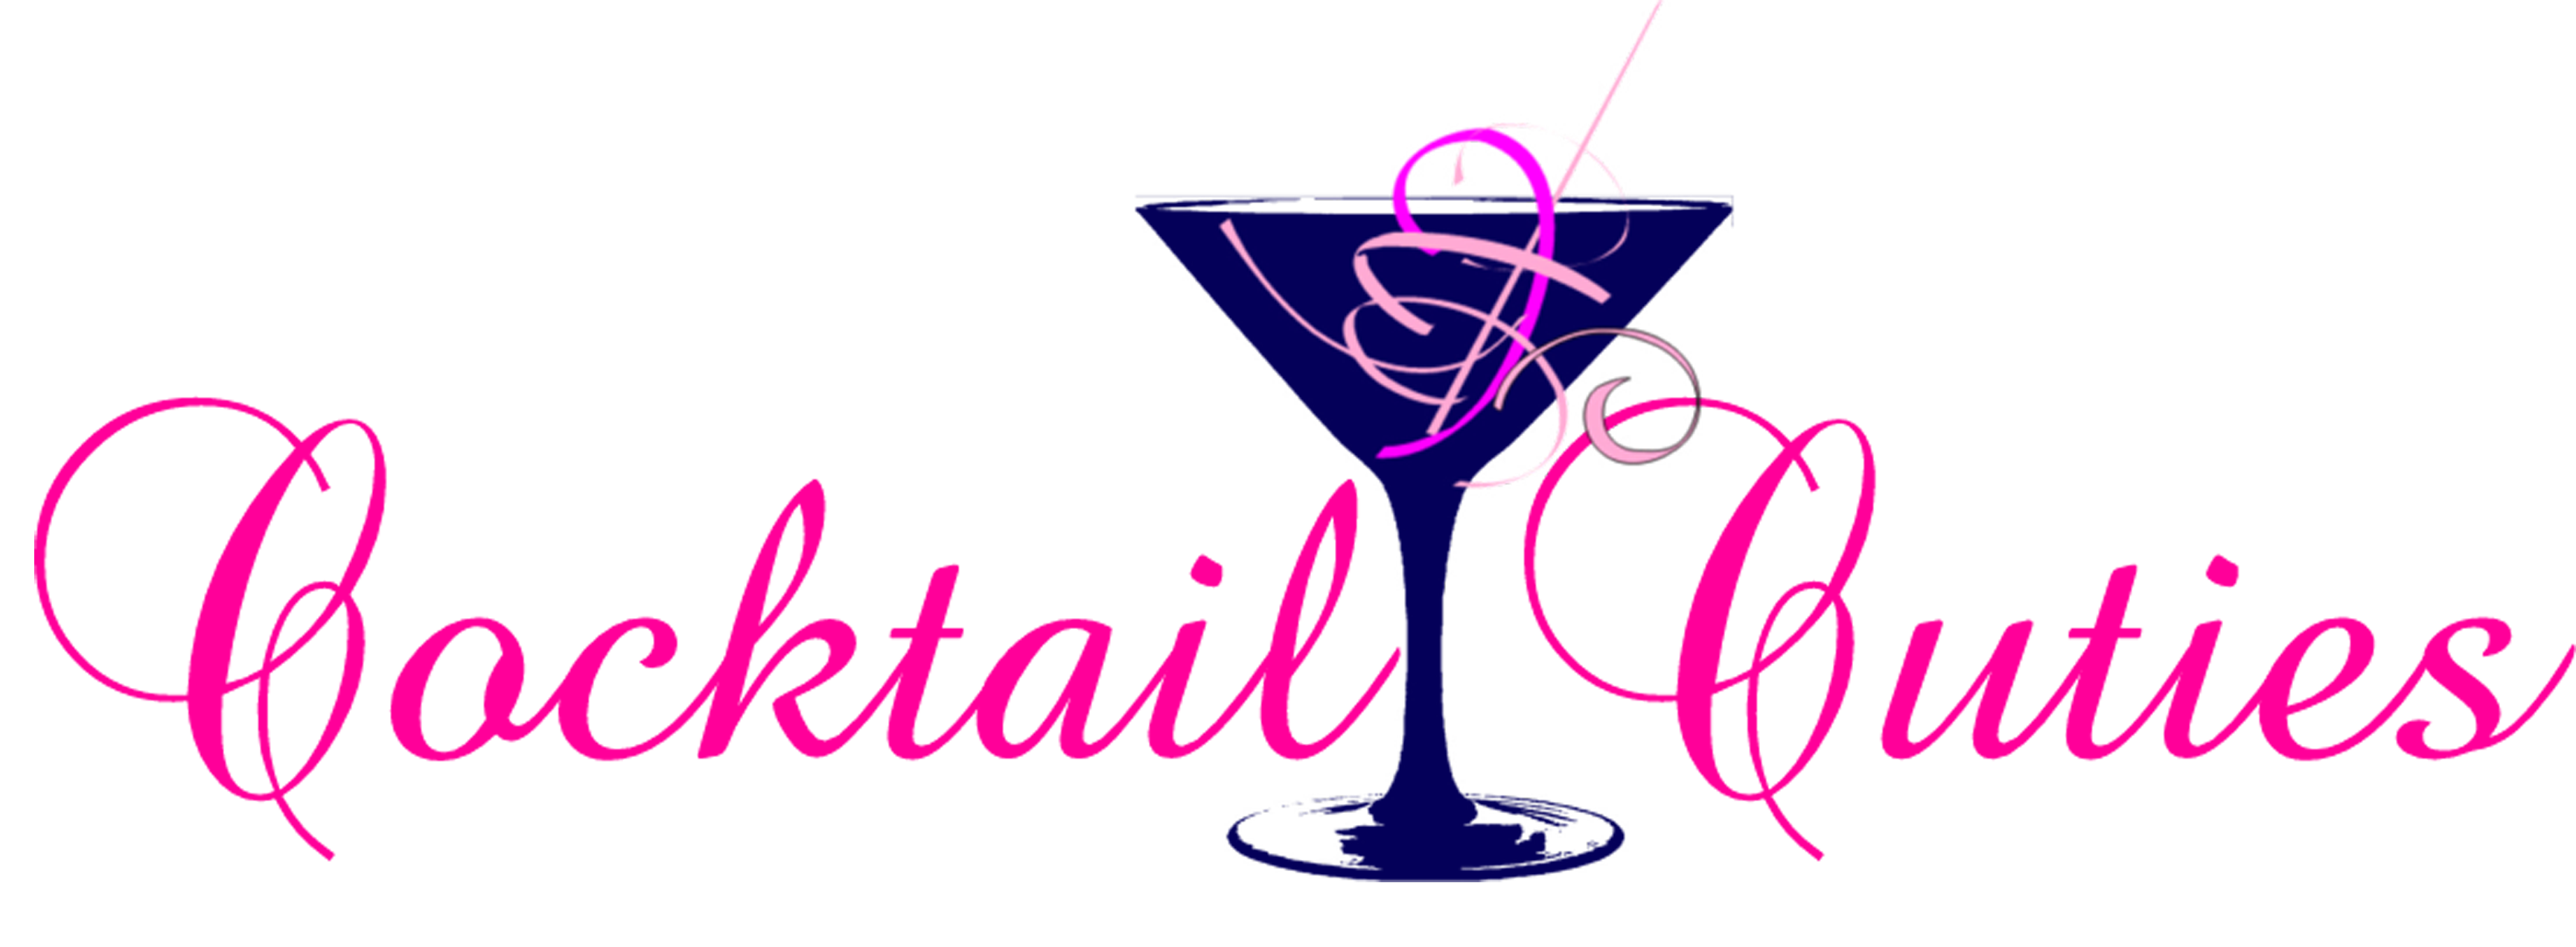 cocktails clipart bartender